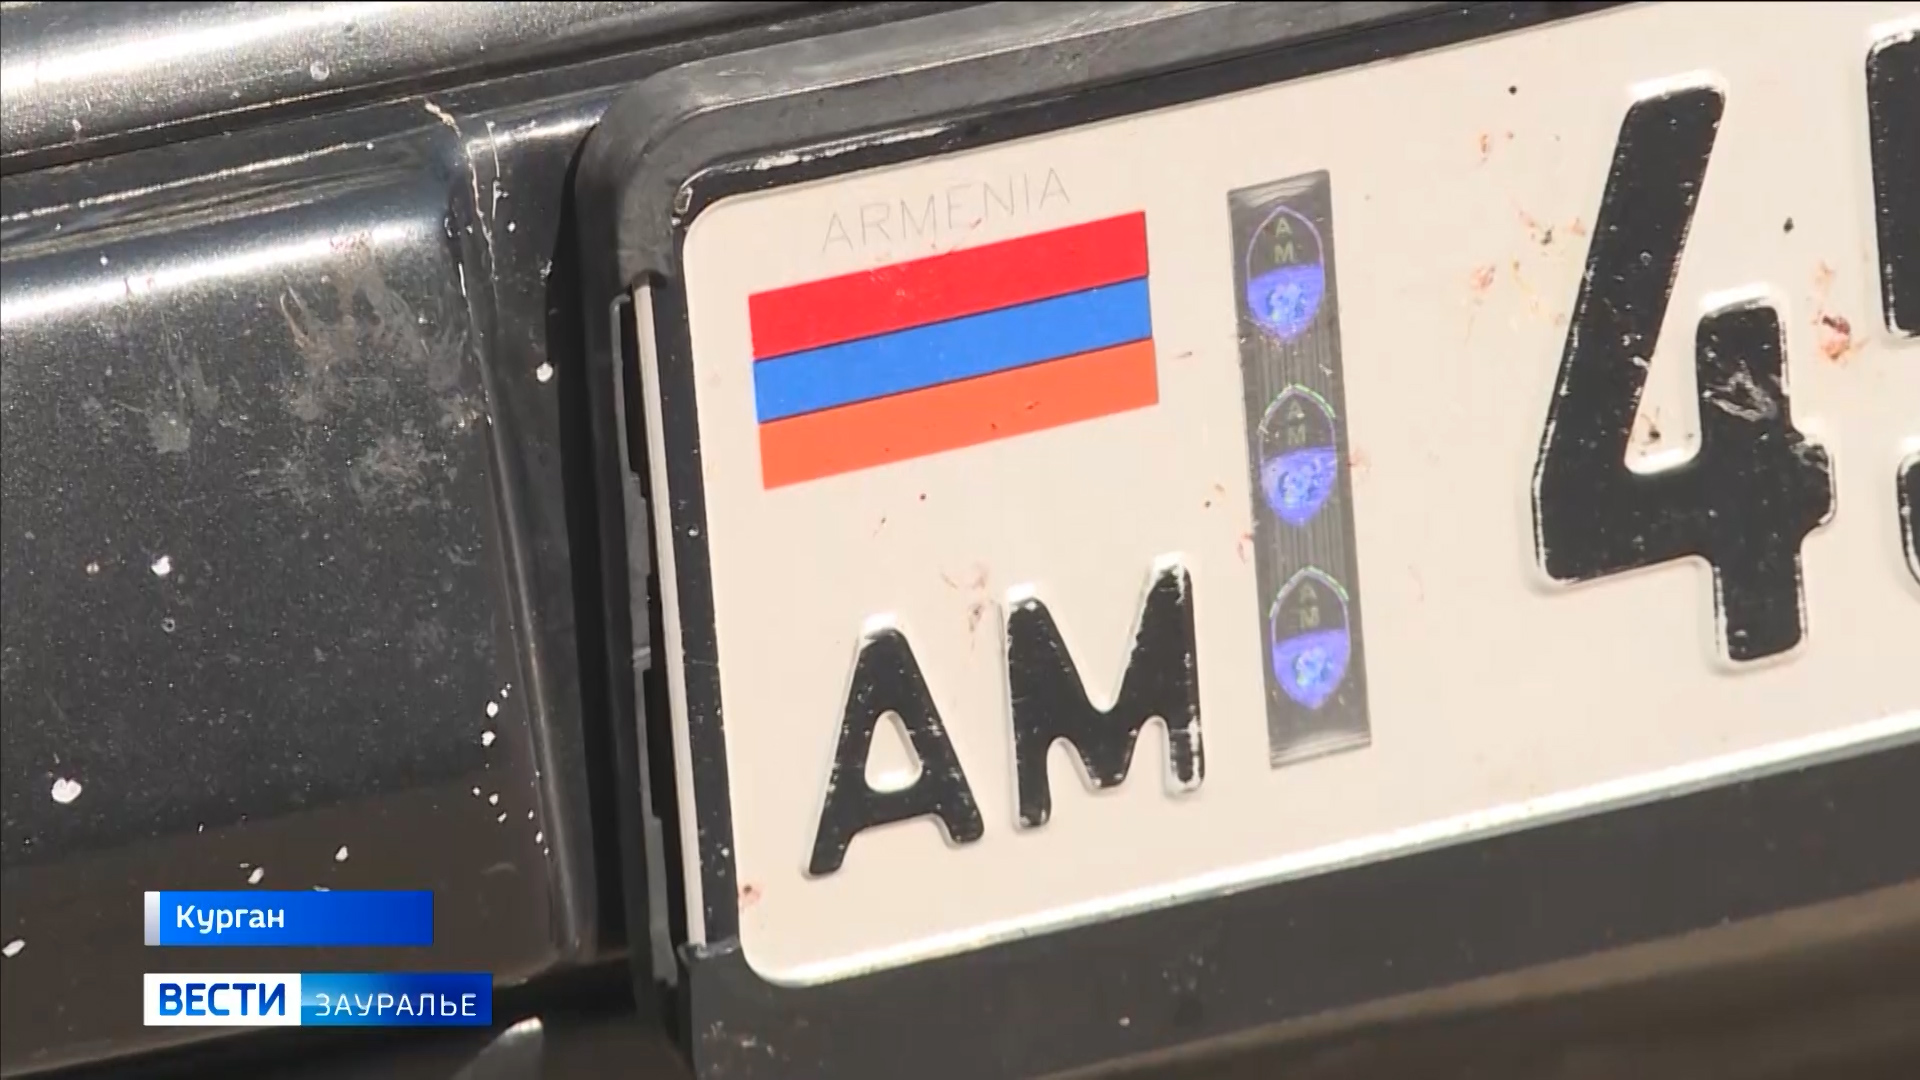 Армянские номера на машине в россии. Армения номера машин. Номера Армении на авто. Армянские номера автомобилей. Номерные знаки Армении.